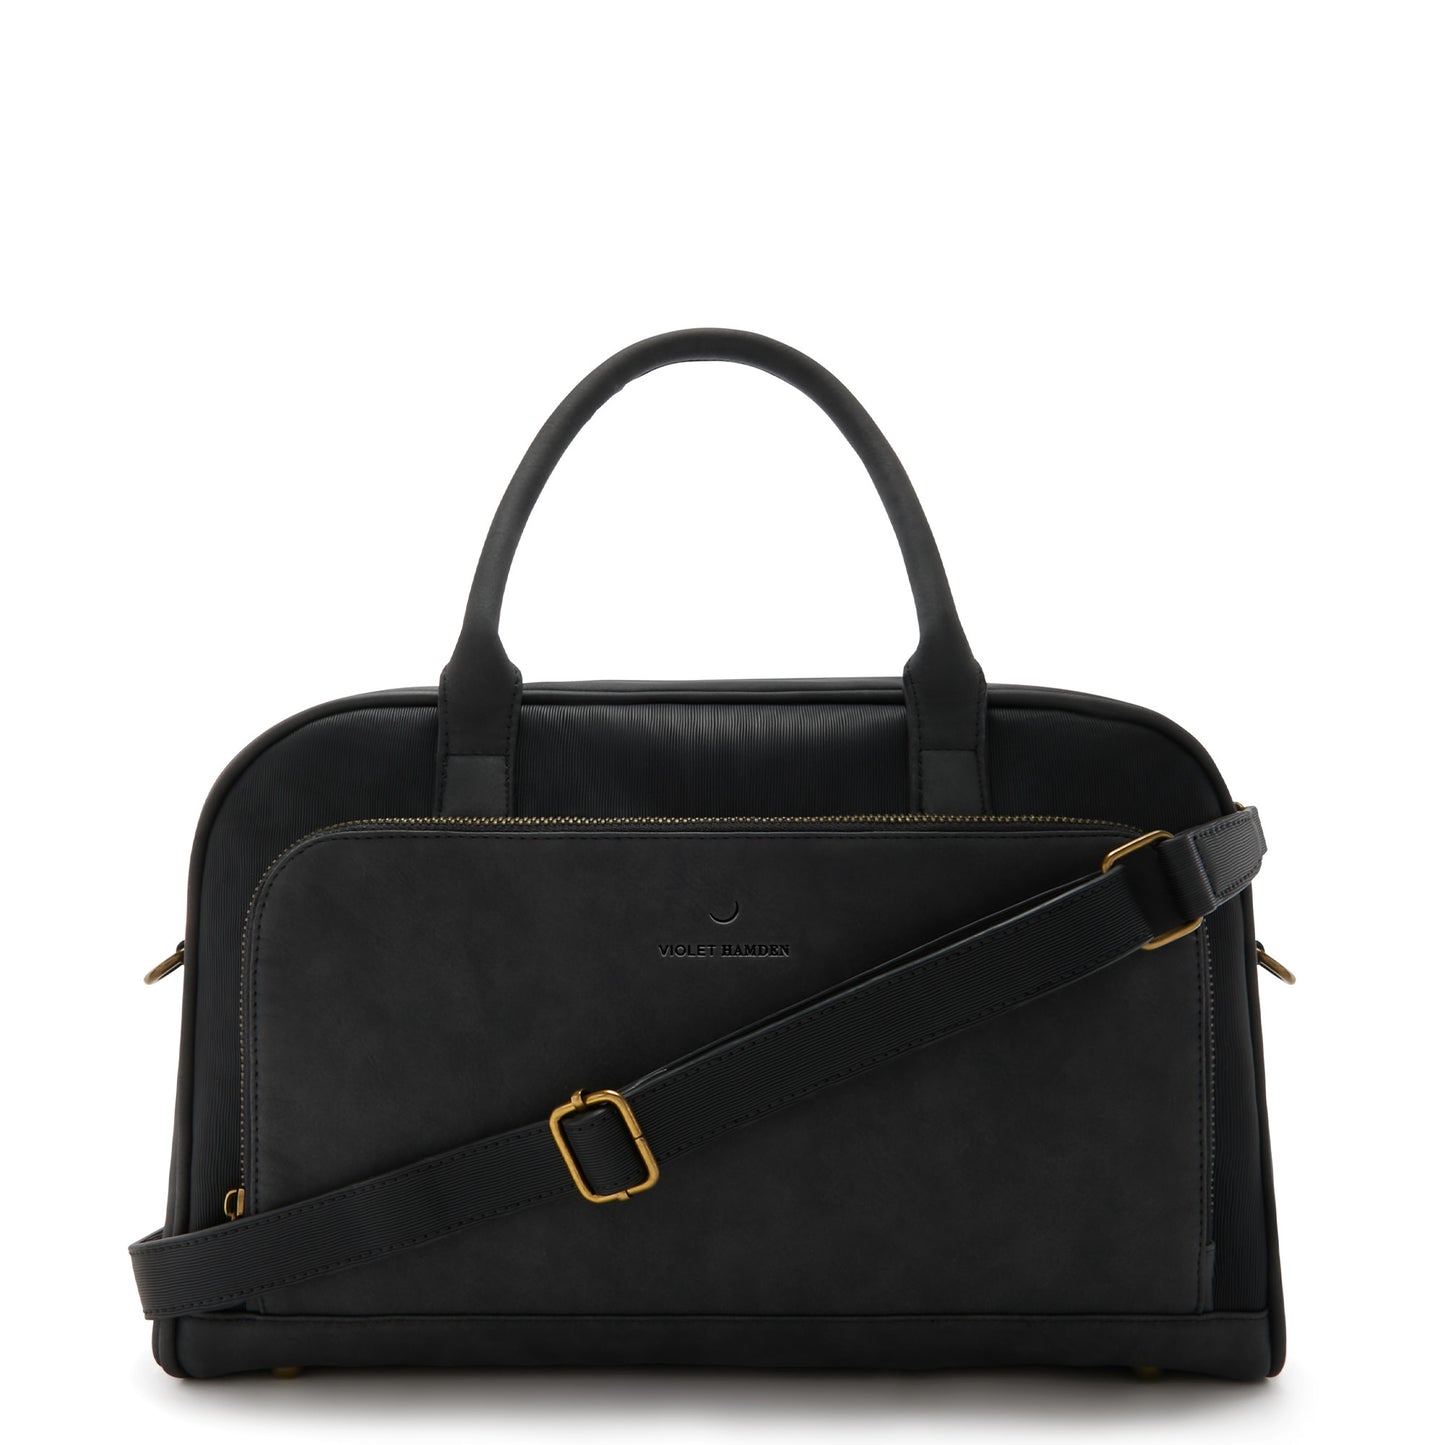 Essential Bag black handbag